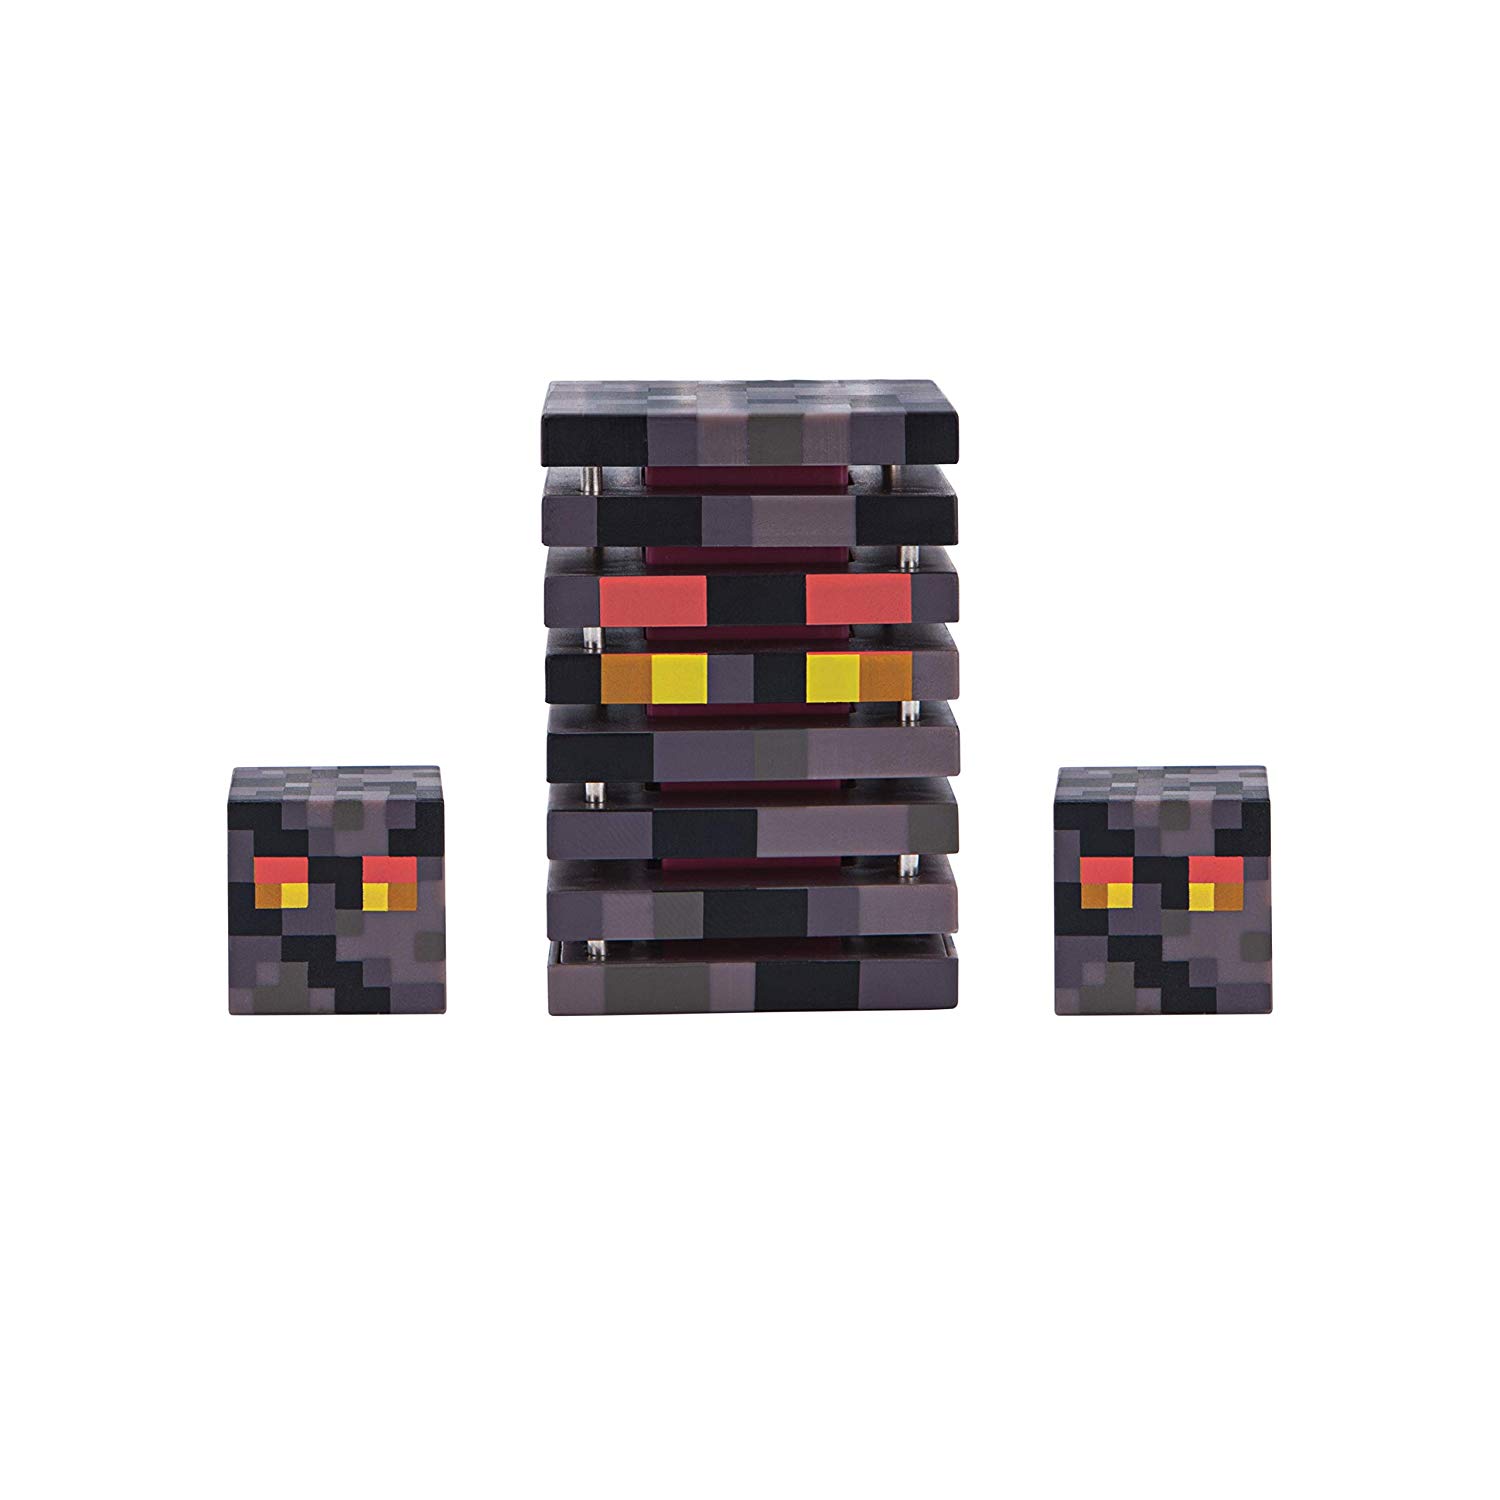 Игрушка Minecraft фигурка Magma Cube  